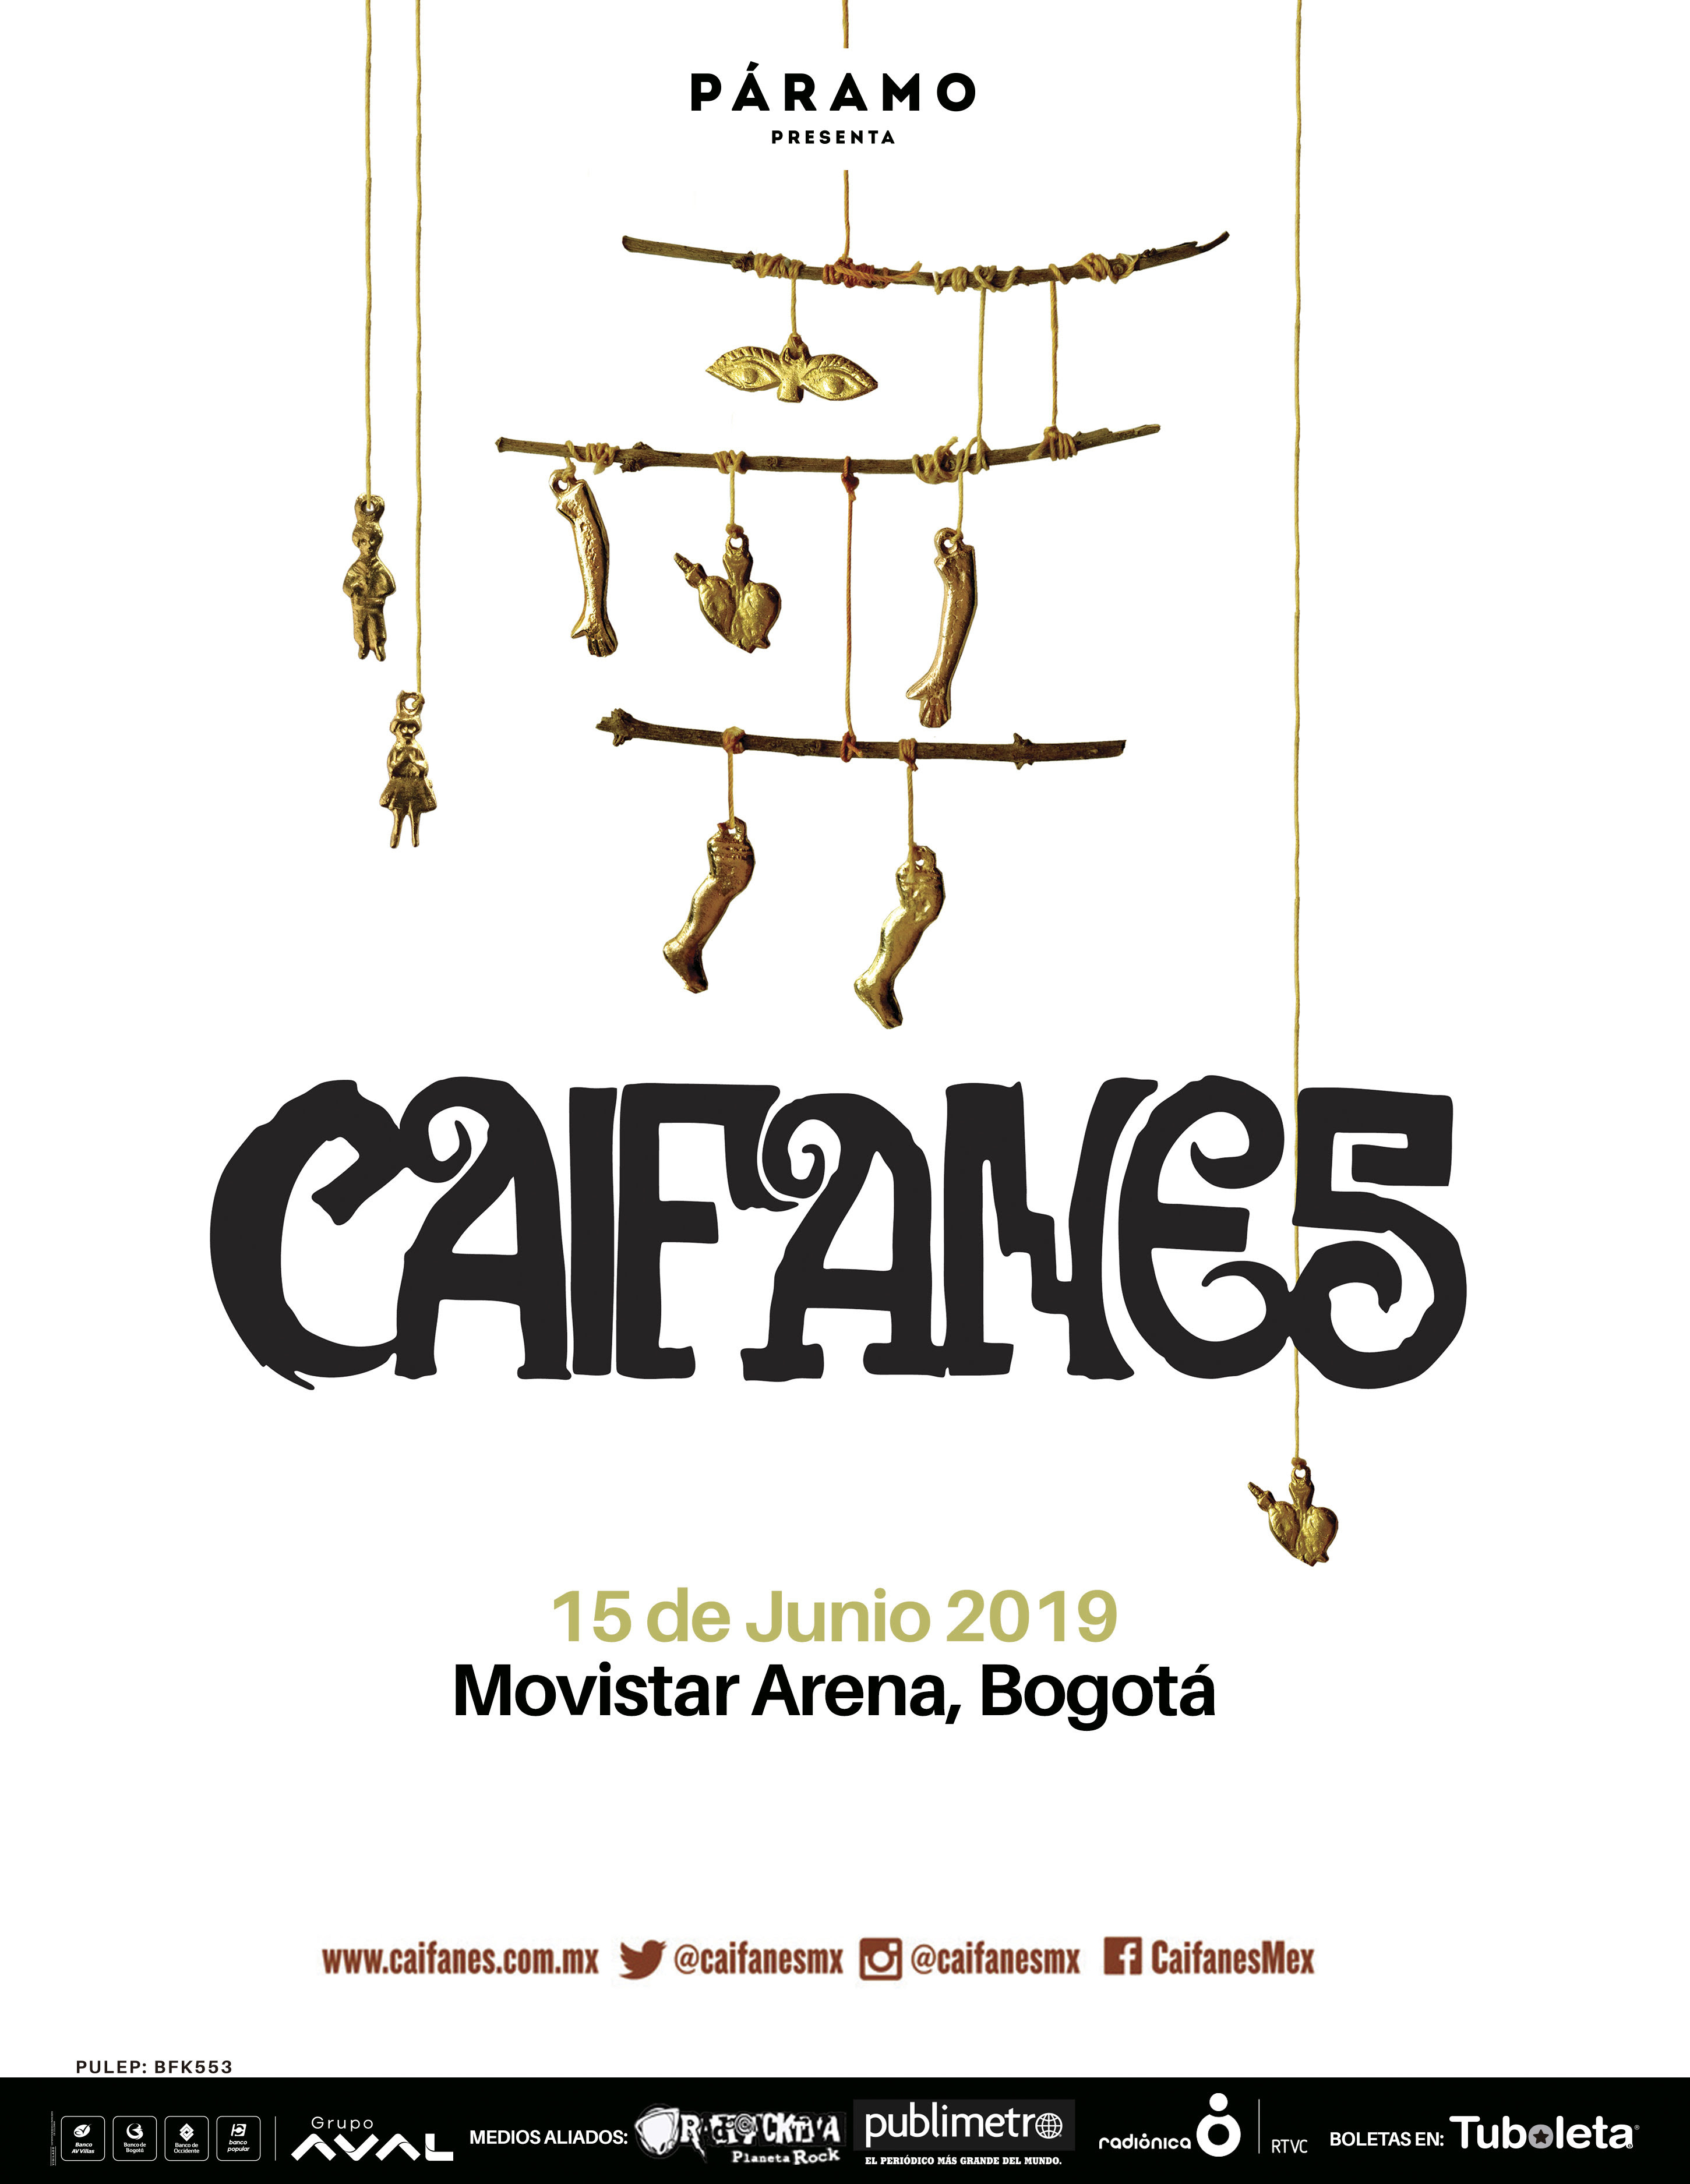 Descubra 5 datos claves del concierto de Caifanes en Colombia 